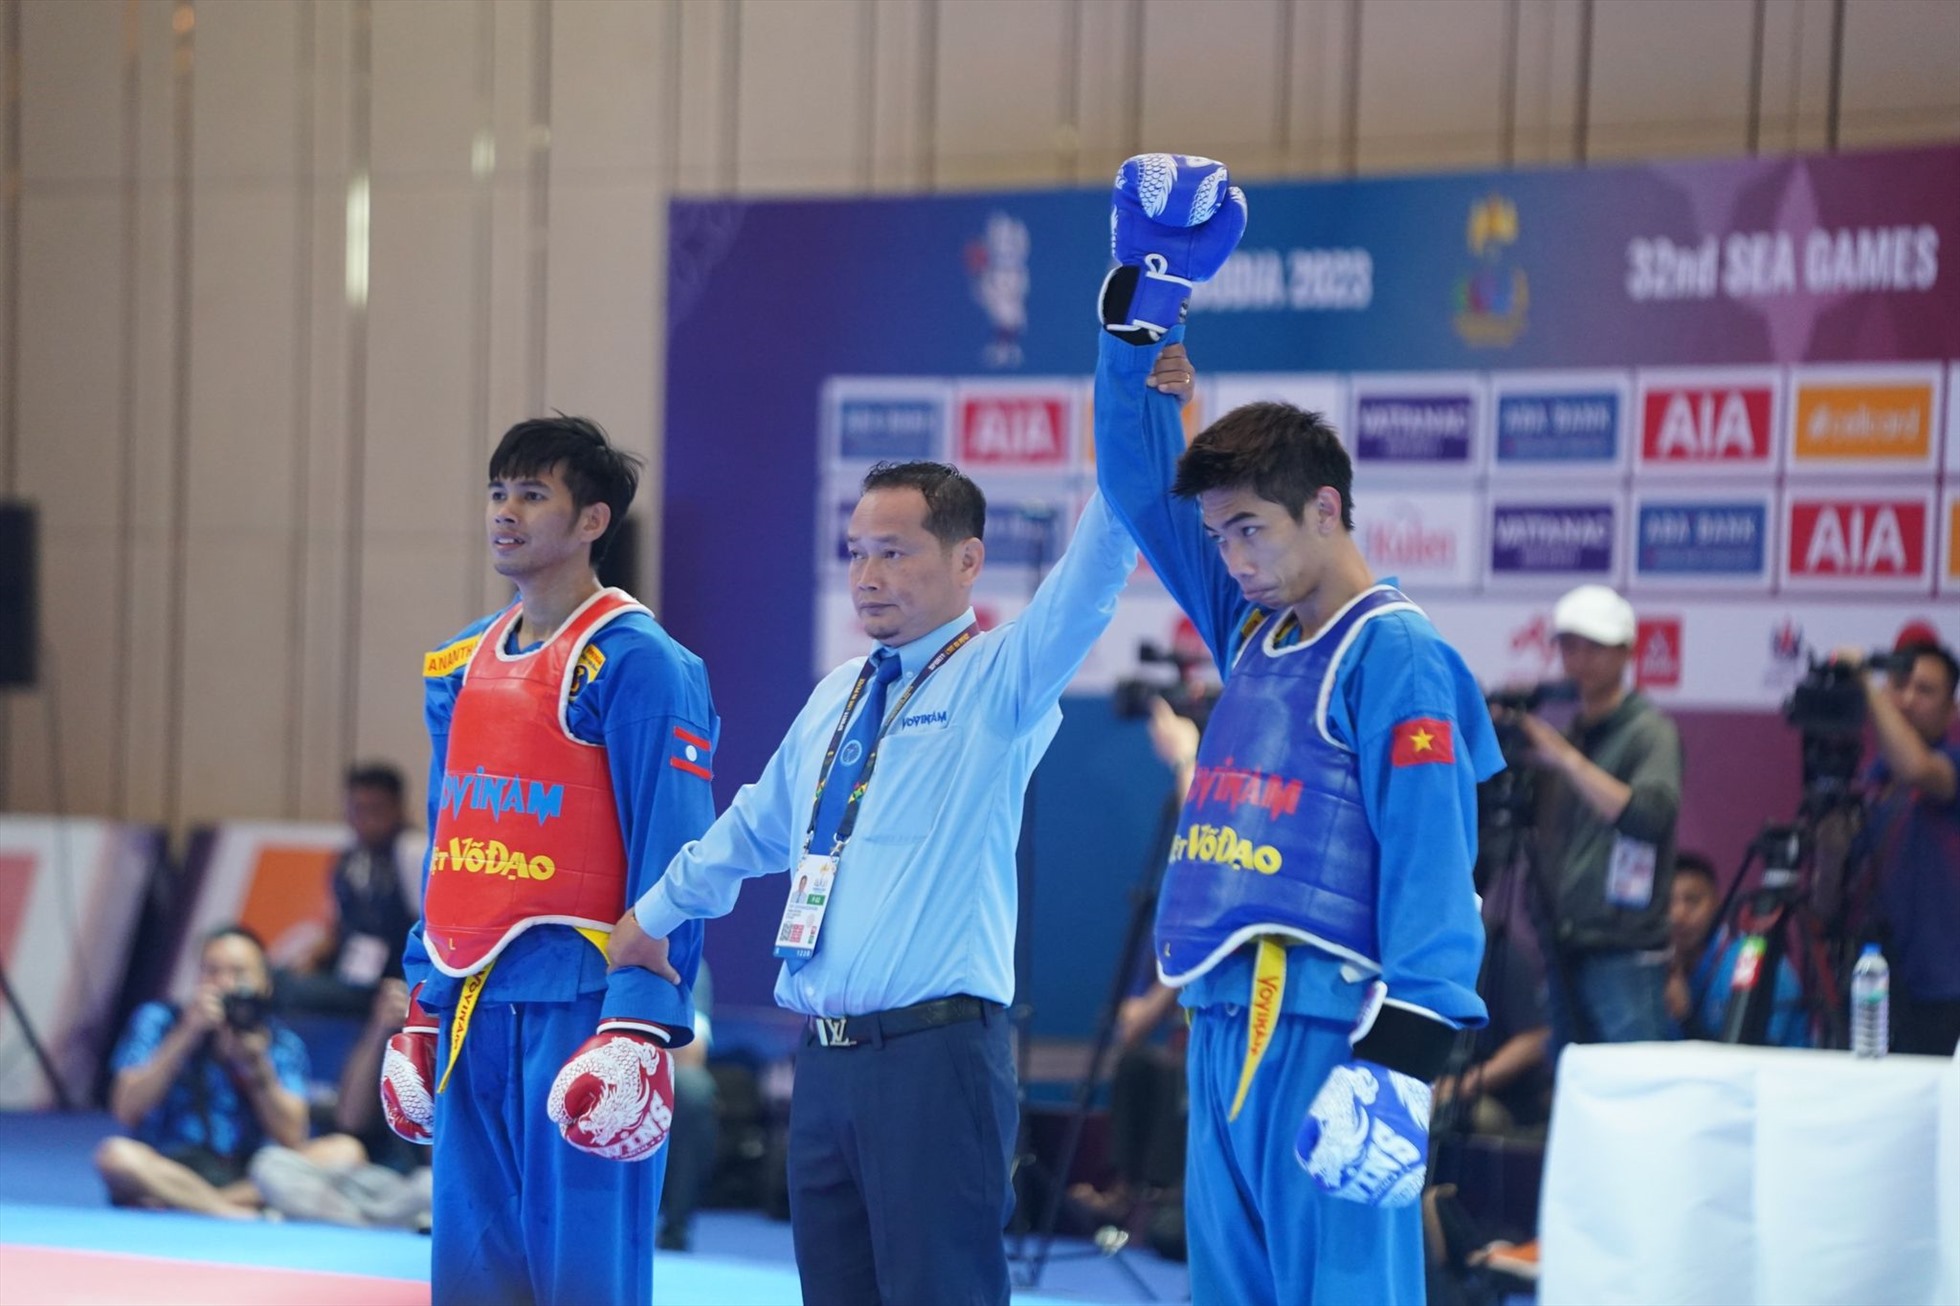 Nguyễn Thanh Liêm (giáp xanh) vào chung kết cạnh tranh tấm huy chương vàng. Ảnh: Thanh Vũ